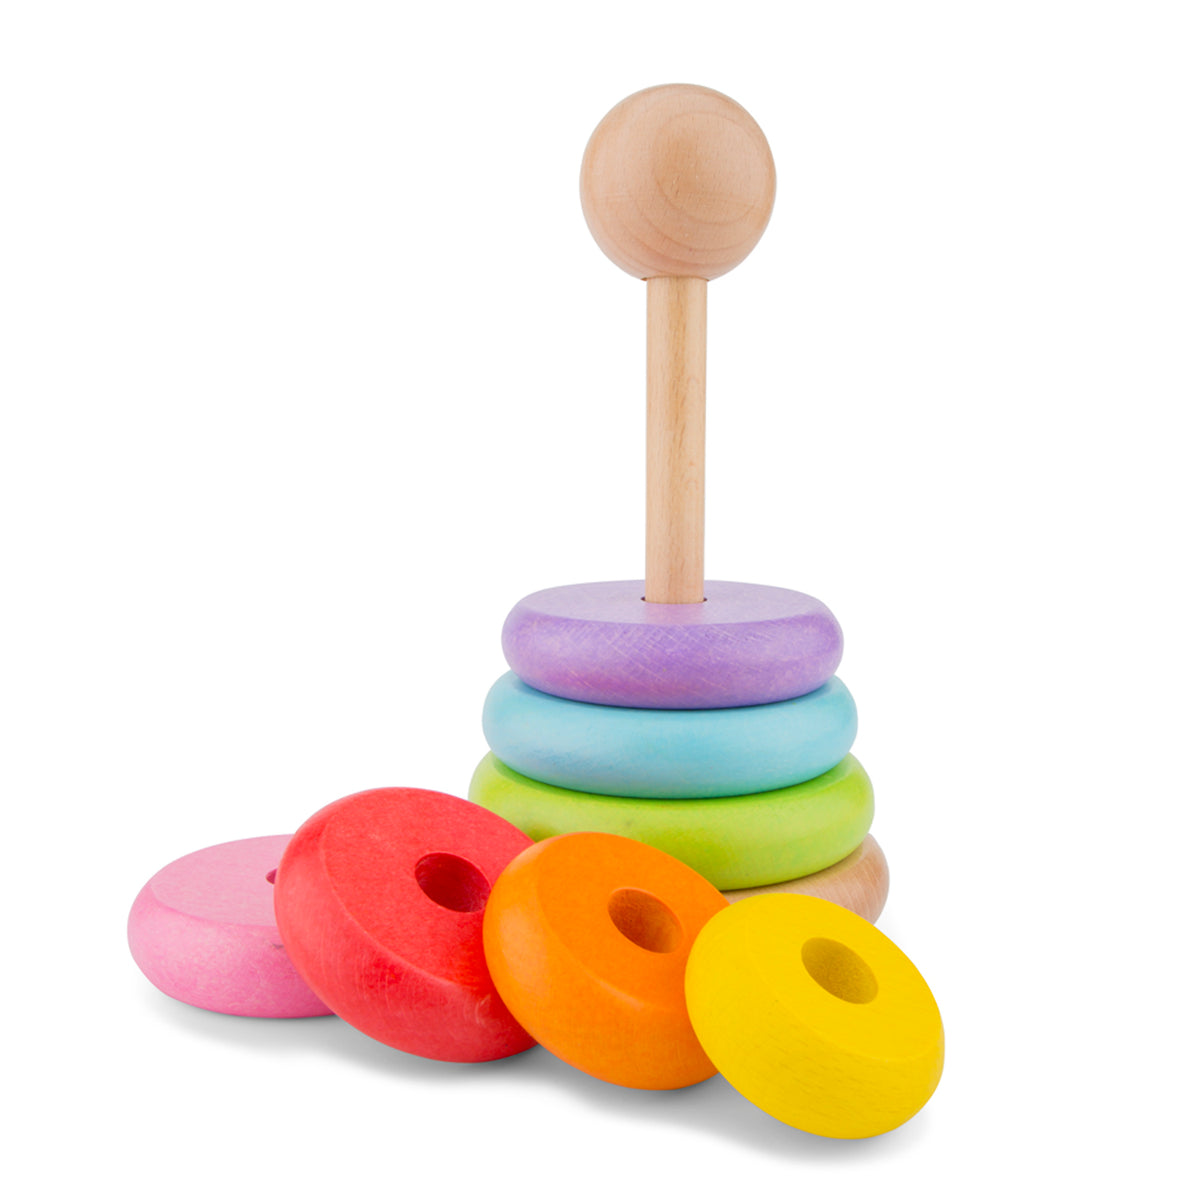 Der Regenbogen-Stapelturm von New Classic Toys besteht aus Buchenholz mit 7 farbigen Ringen. Diese langlebige Variante oder der zeitlose Klassiker ist der Favorit vieler Kinder. Die Holzformen sind leicht zu fassen. 